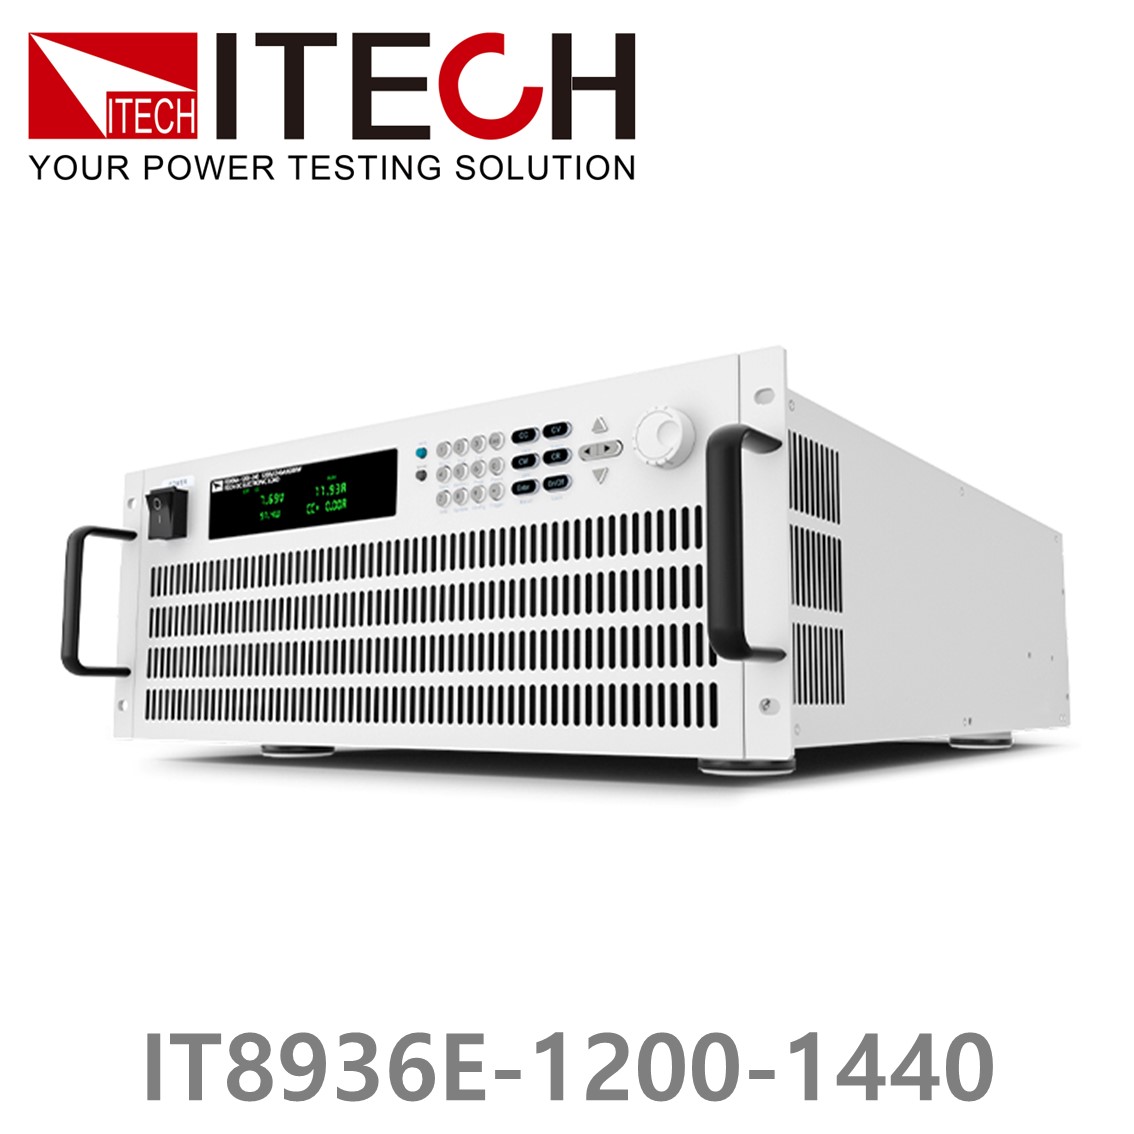 [ ITECH ] IT8936E-1200-1440  고성능 고전력 DC 전자로드 1200V/1440A/36kW (27U)